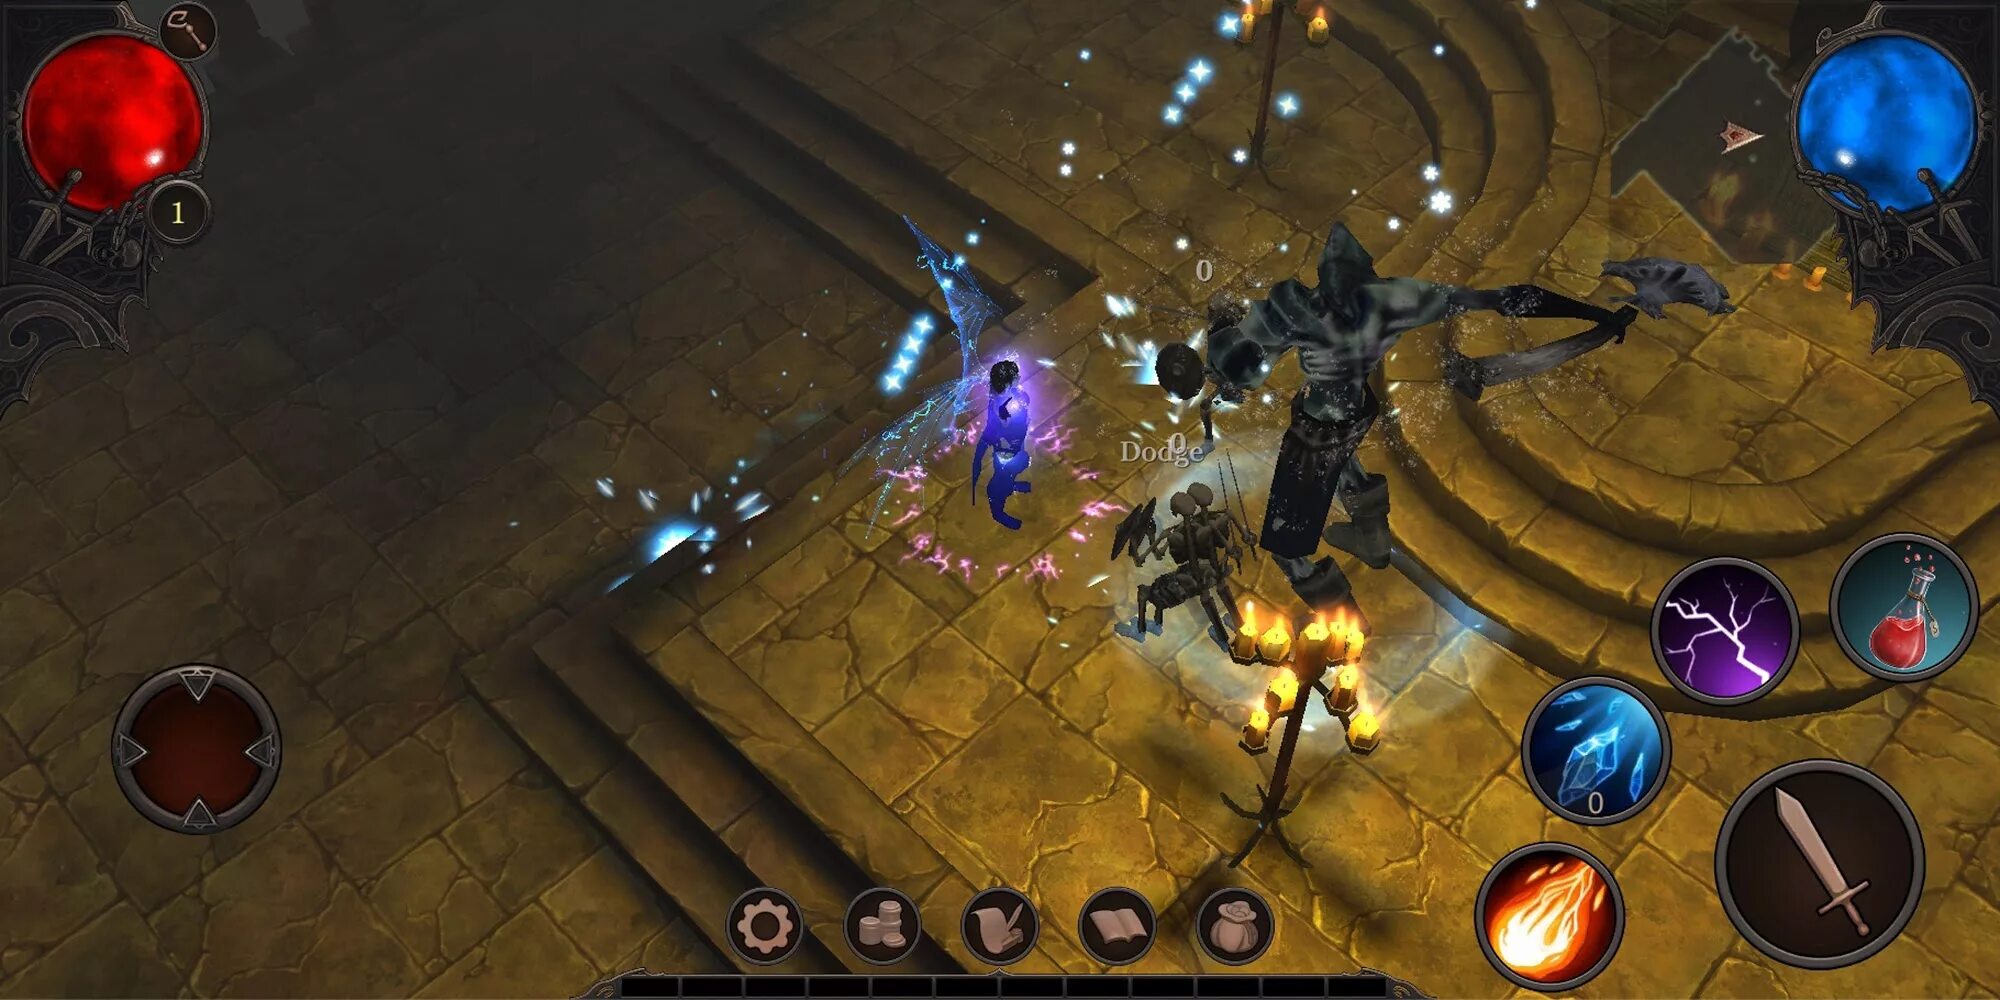 РПГ типа диабло 3. Diablo 3 Android. Vengeance игра на андроид. Диабло мультиплеер. Бесплатная рпг на телефон